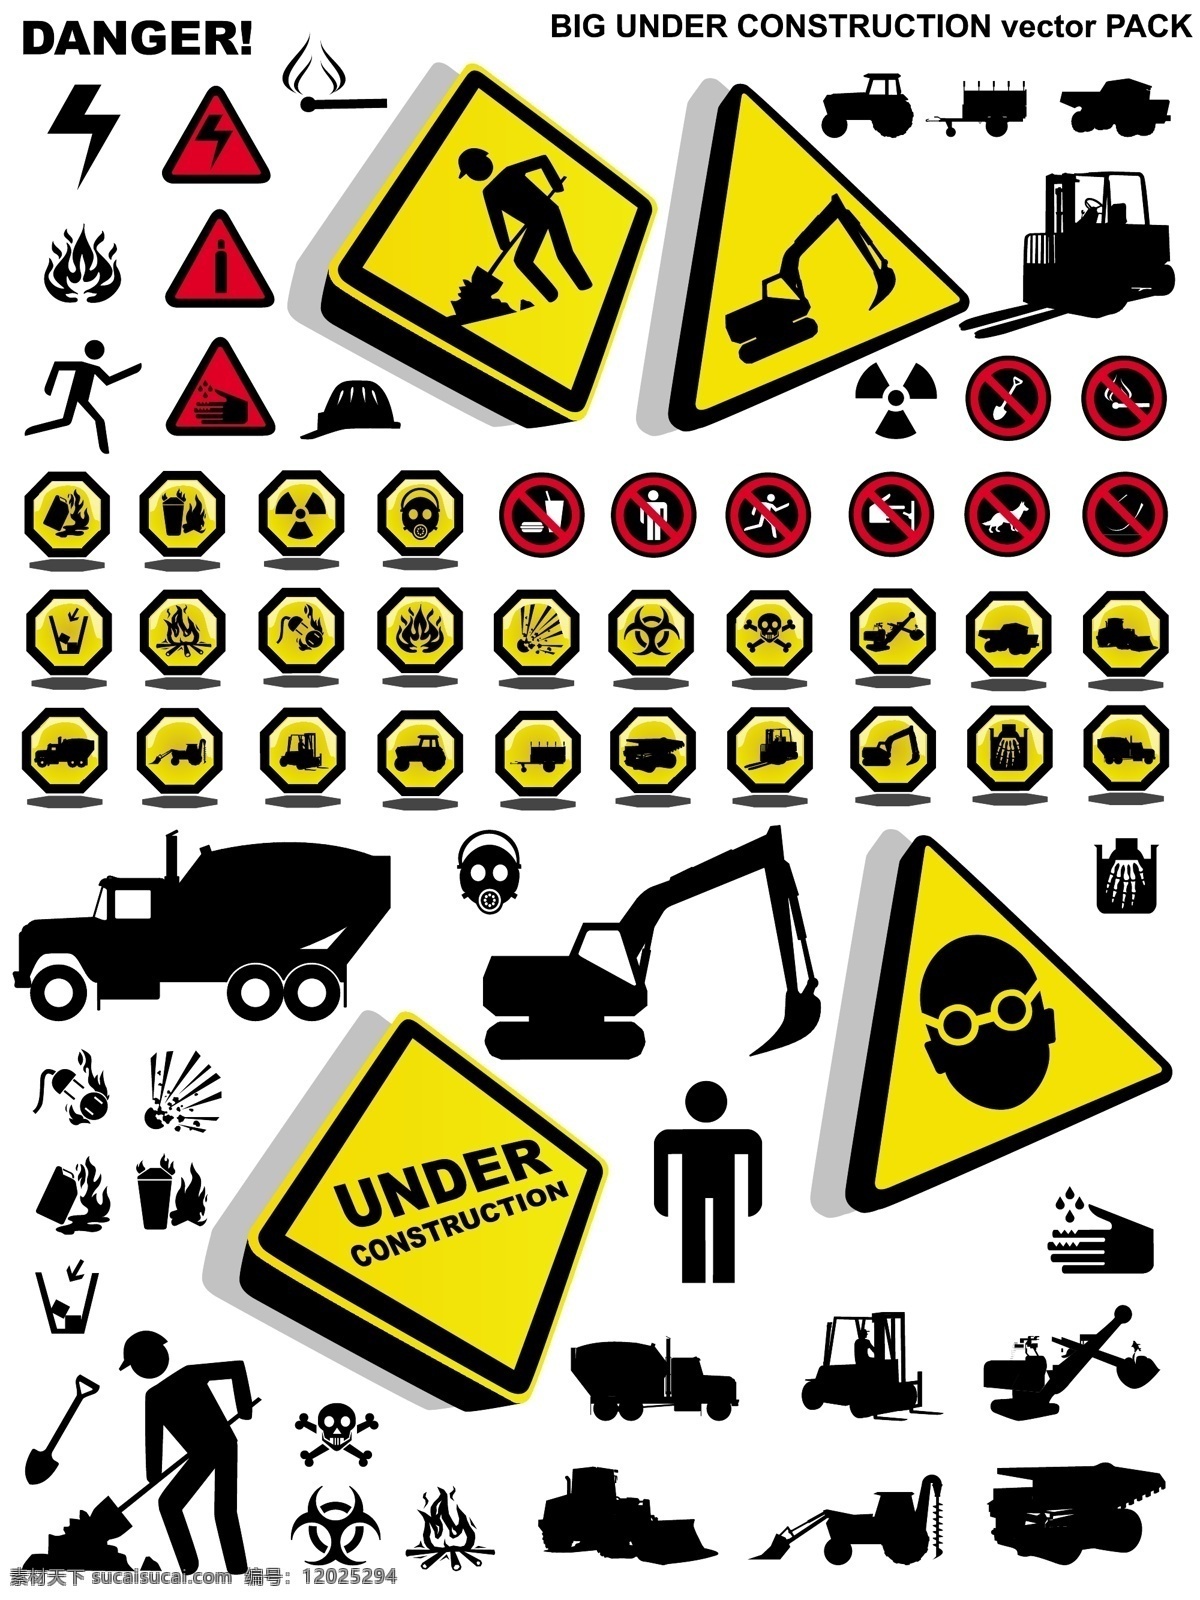 施工 请 注意 安全 图标 矢量 工程 化学 剪影 警告 警告标志 起重机 挖掘机 网站 危险 维护 注意安全 水泥的卡车 修理 头骨 矢量图 其他矢量图